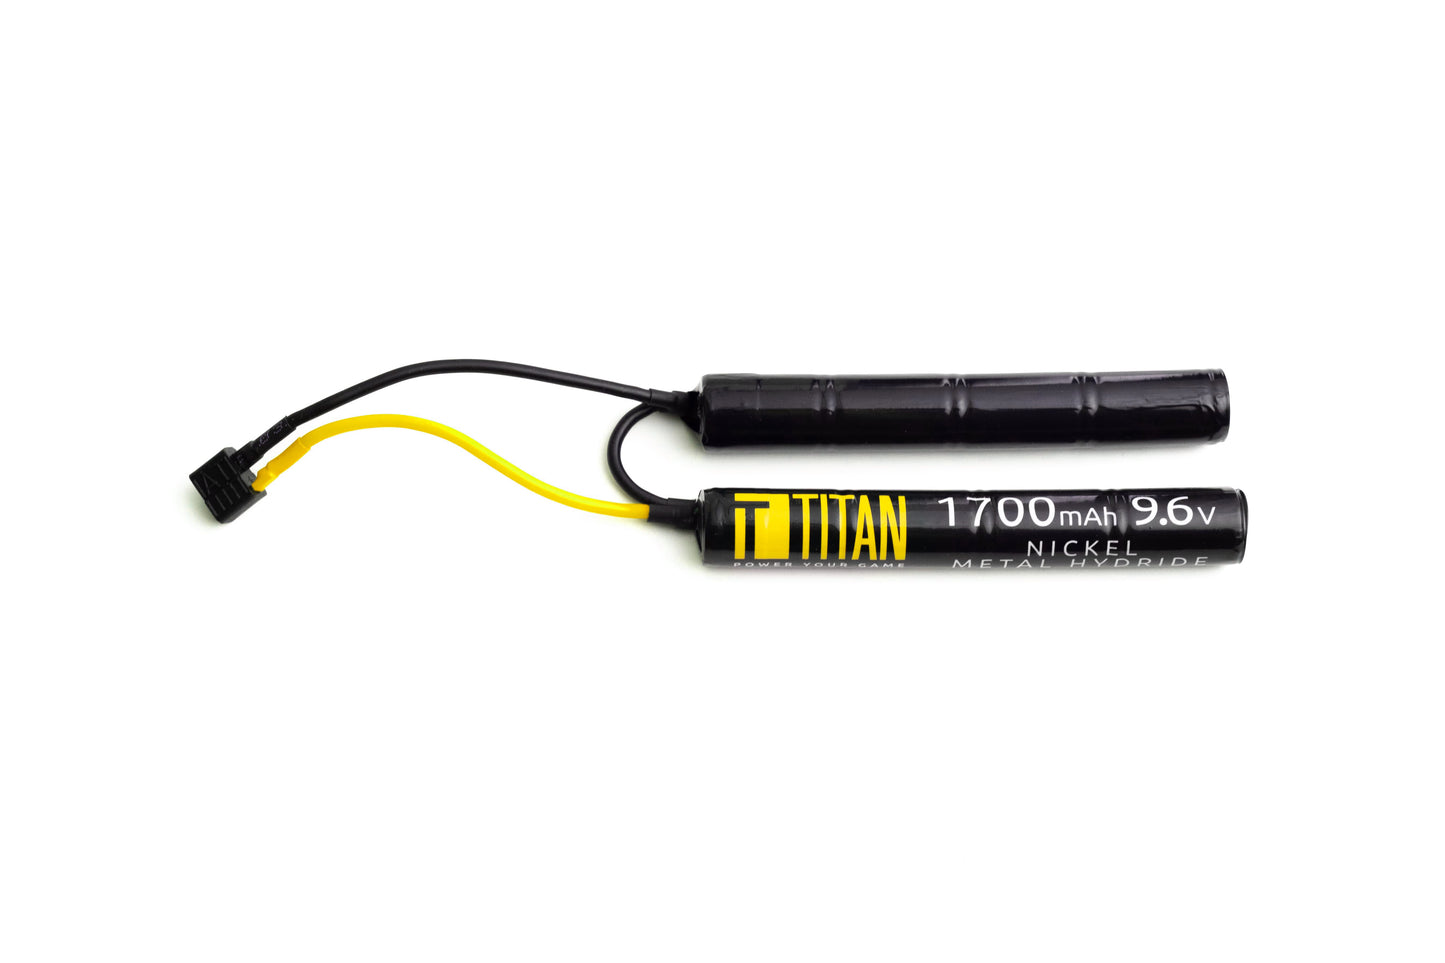 Titan NiMh 1700mAh 9.6v Nunchuck T-Plug (Deans) - Dealer